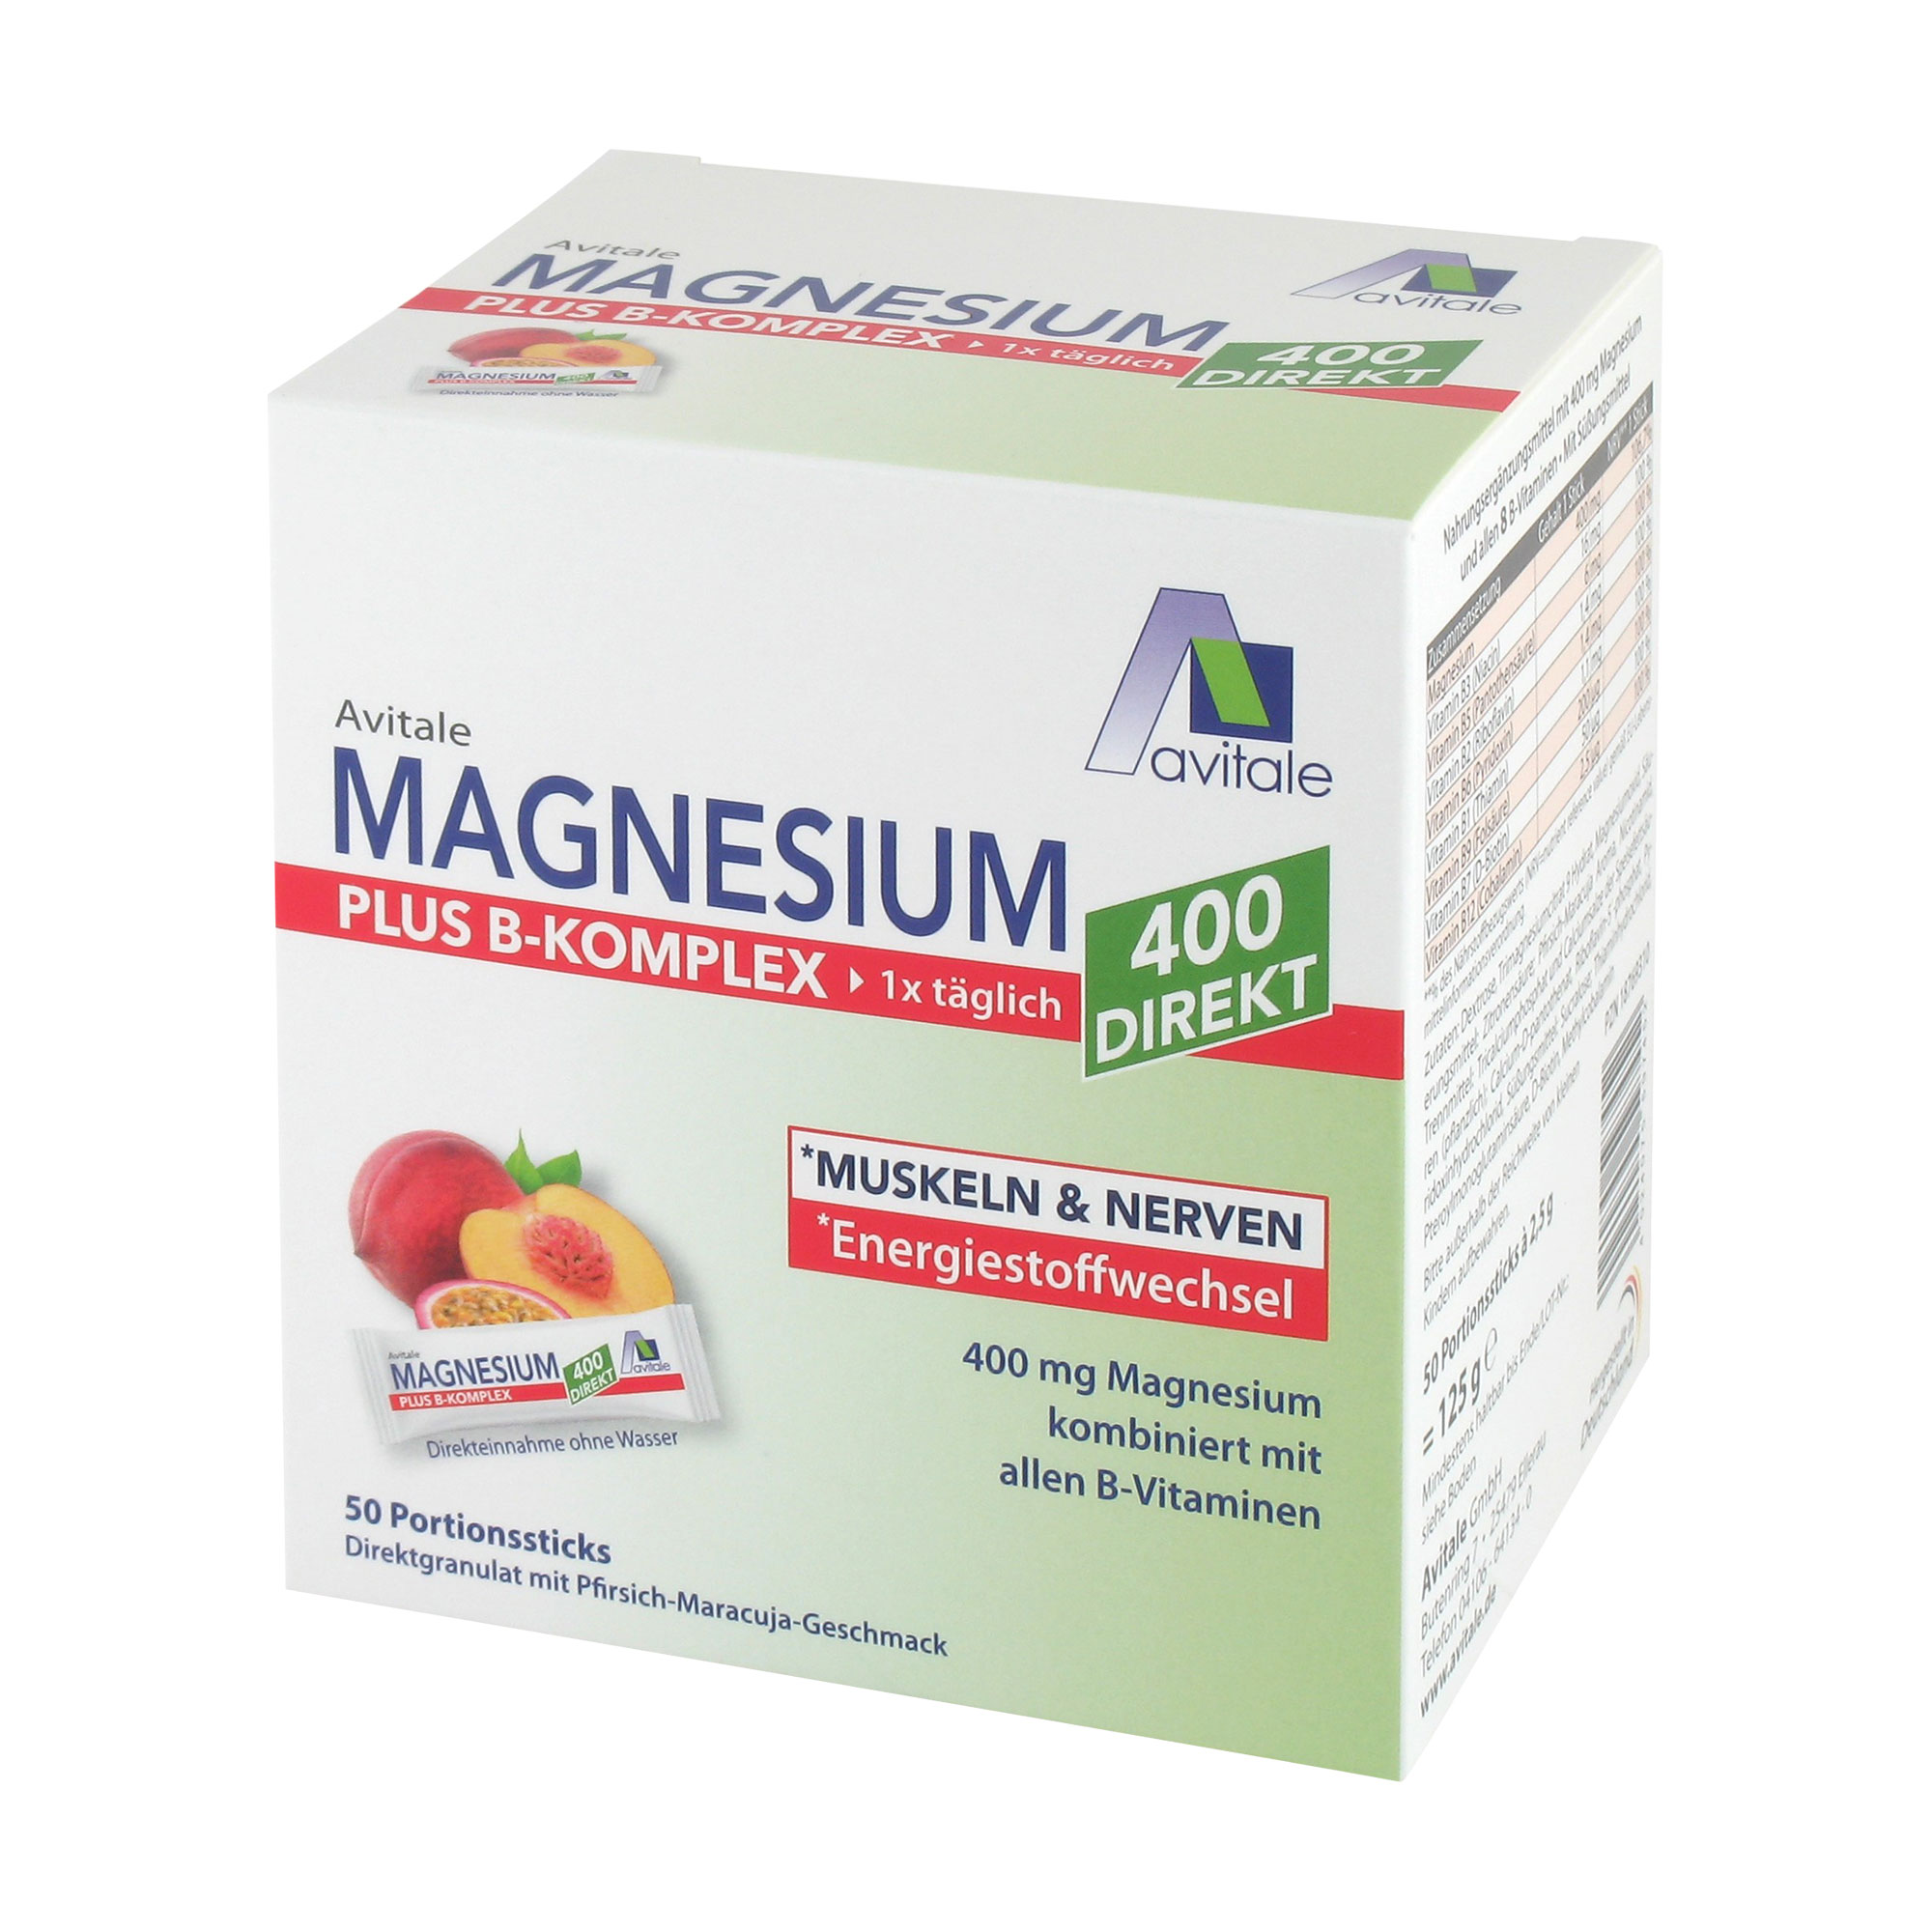 Nahrungsergänzungsmittel mit 400 mg Magnesium und allen 8 B-Vitaminen für Muskeln & Nerven* sowie den Energiestoffwechsel*. Mit Pfirsich-Maracuja-Geschmack.